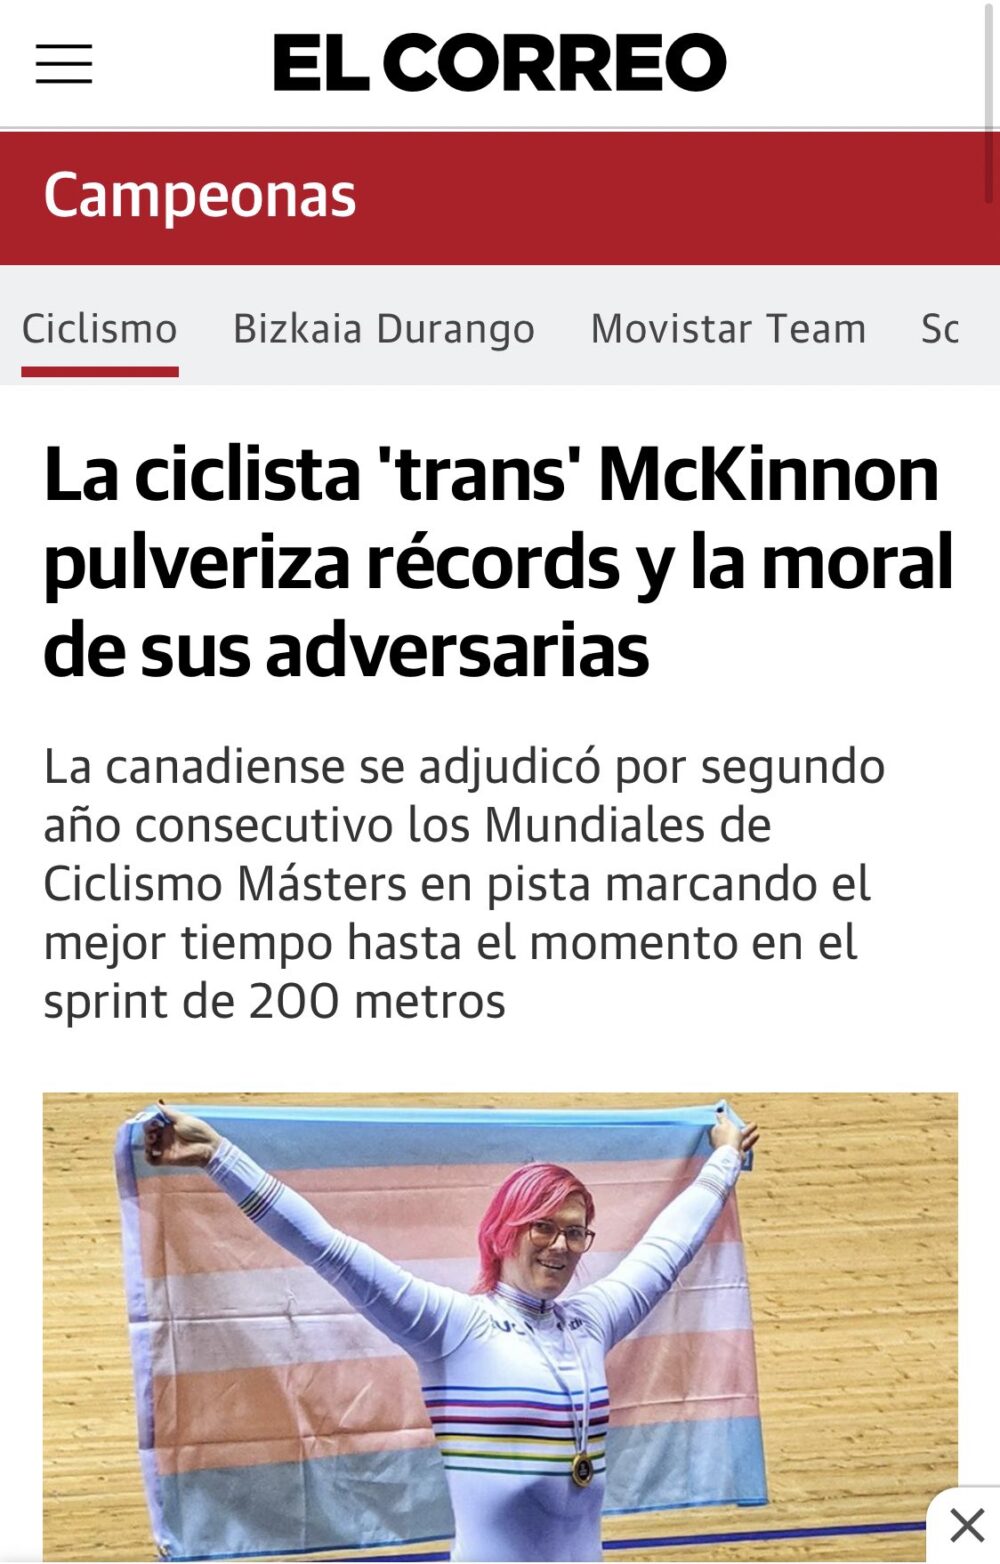 La ciclista 'trans' McKinnon pulveriza récords y la moral de sus adversarias